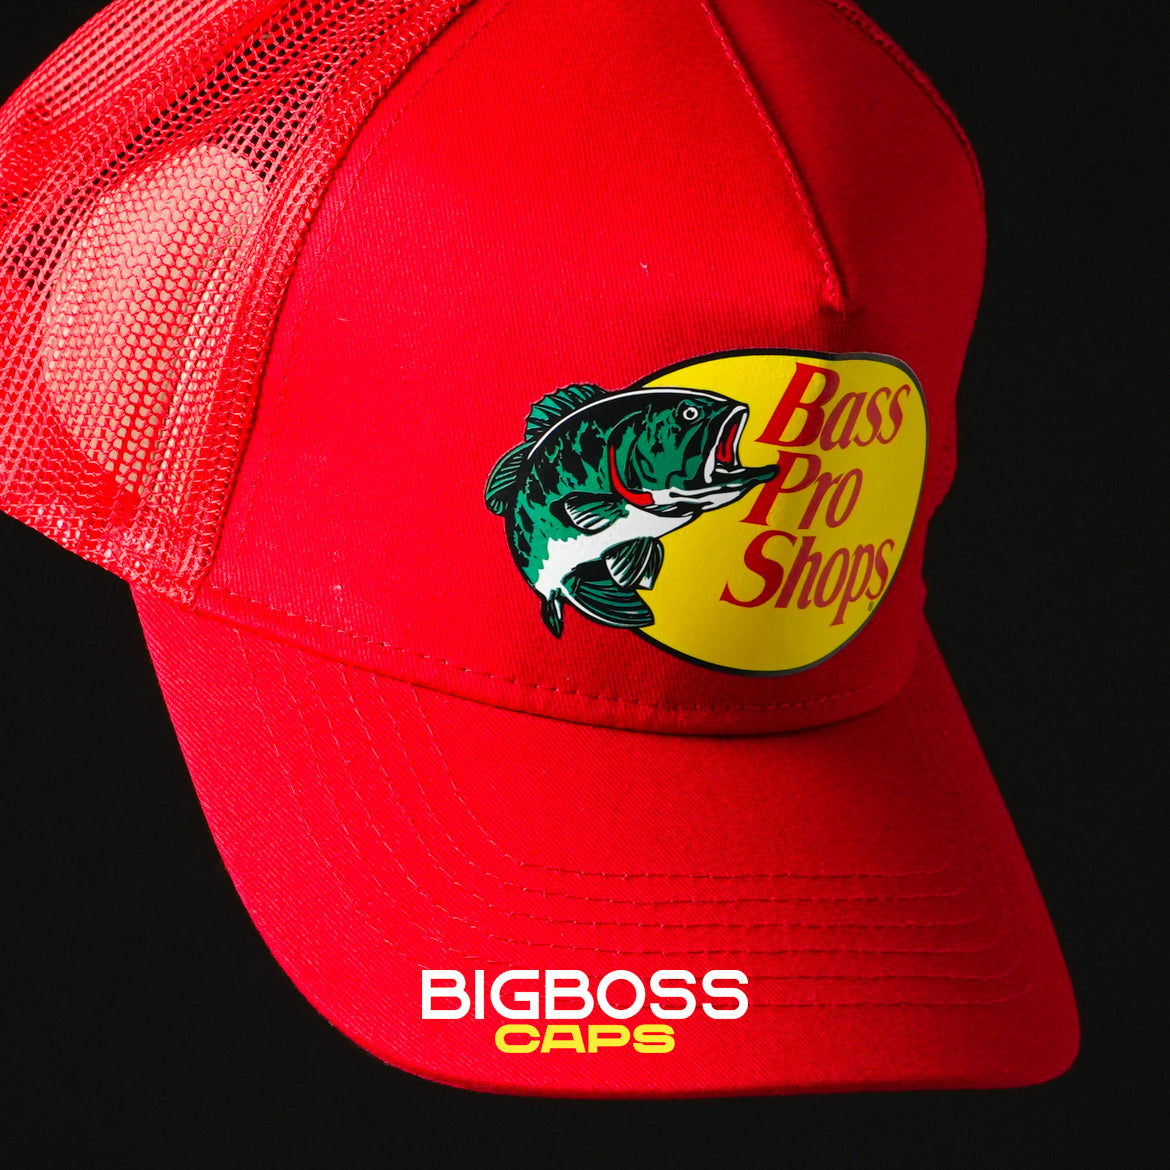 Bass Pro Shops roja – Bigboss Caps